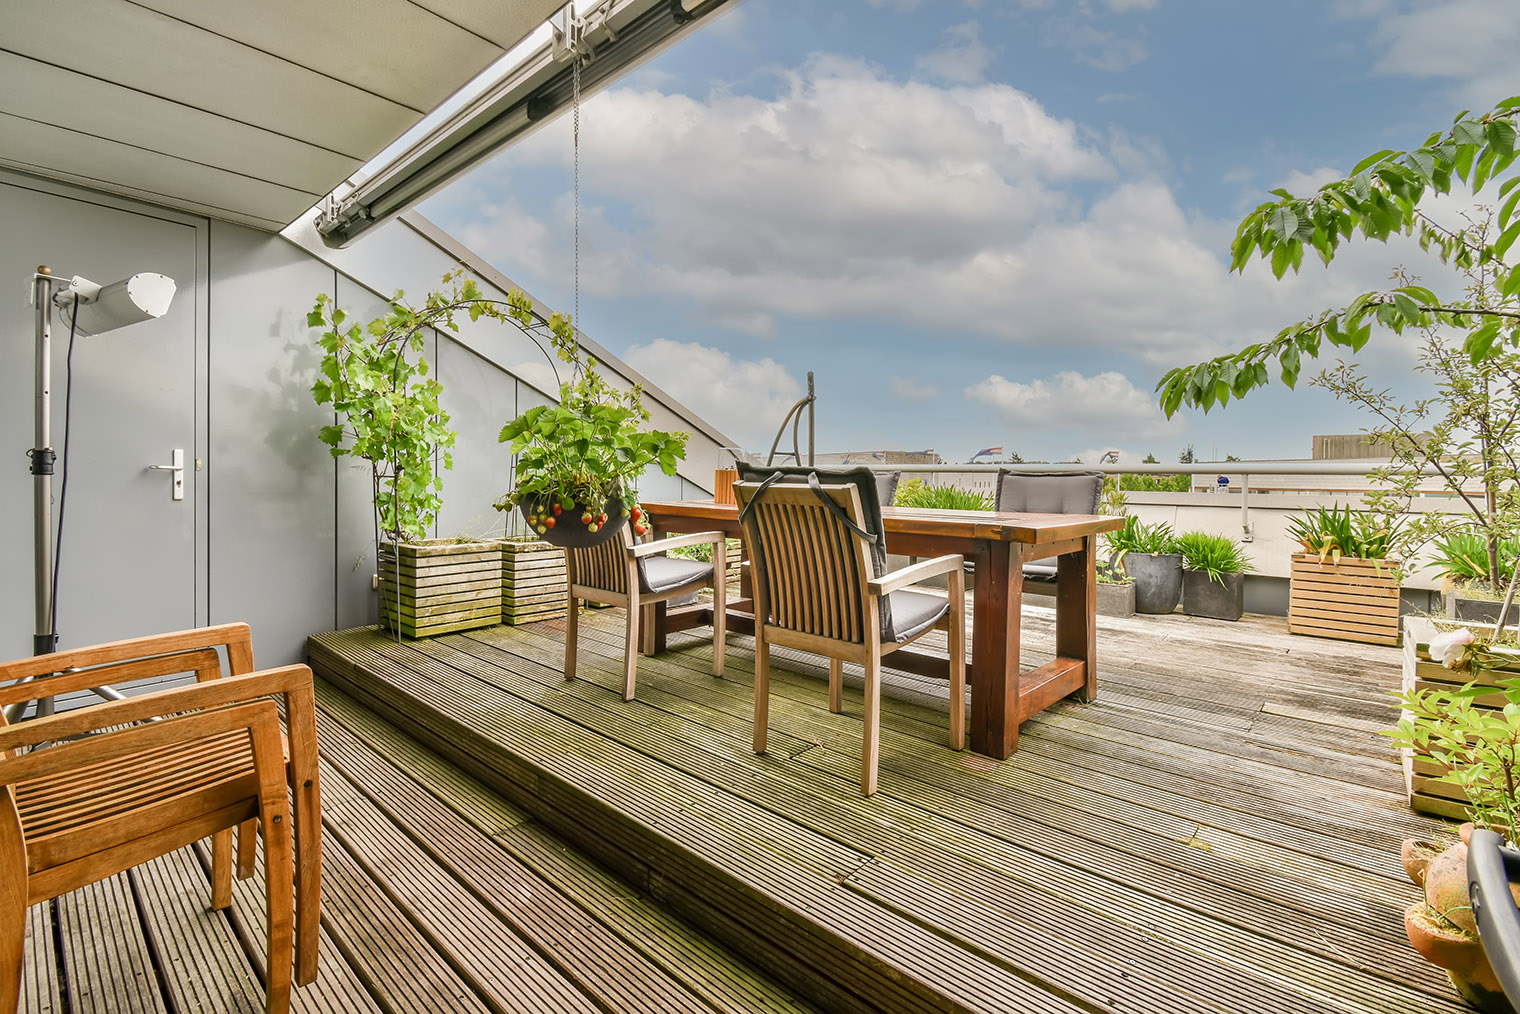 Террасный пол можно постелить не только на земле, но и на балконе второго этажа. Фотография: Procreators / Shutterstock / FOTODOM